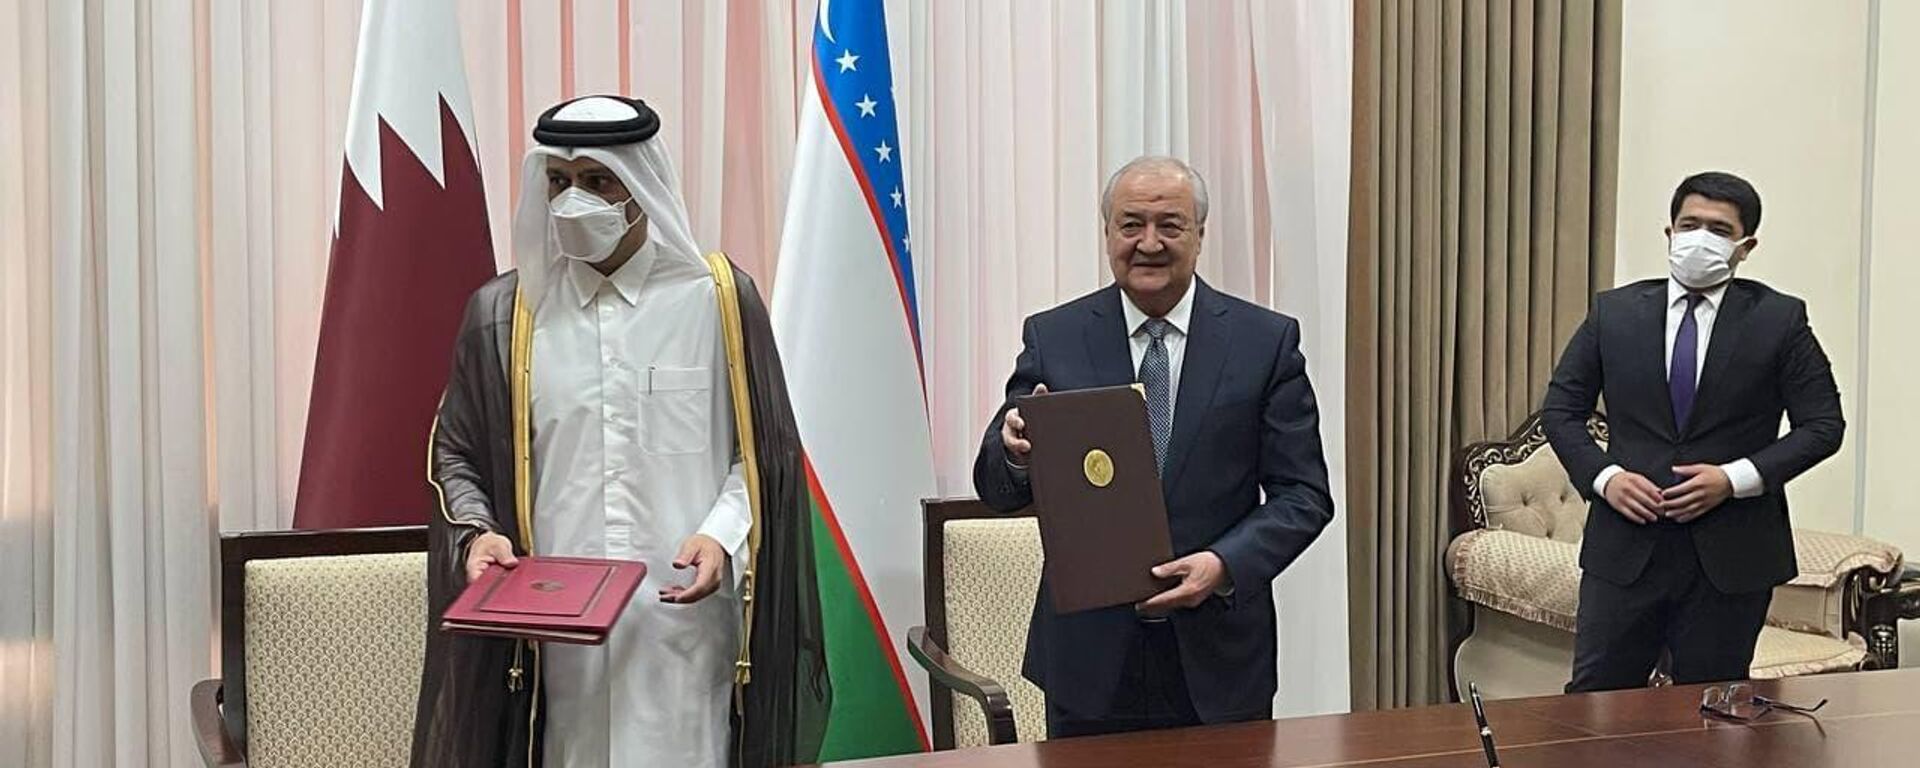 Узбекистан и Катар подписали соглашение о воздушном сообщении - Sputnik Ўзбекистон, 1920, 09.06.2021